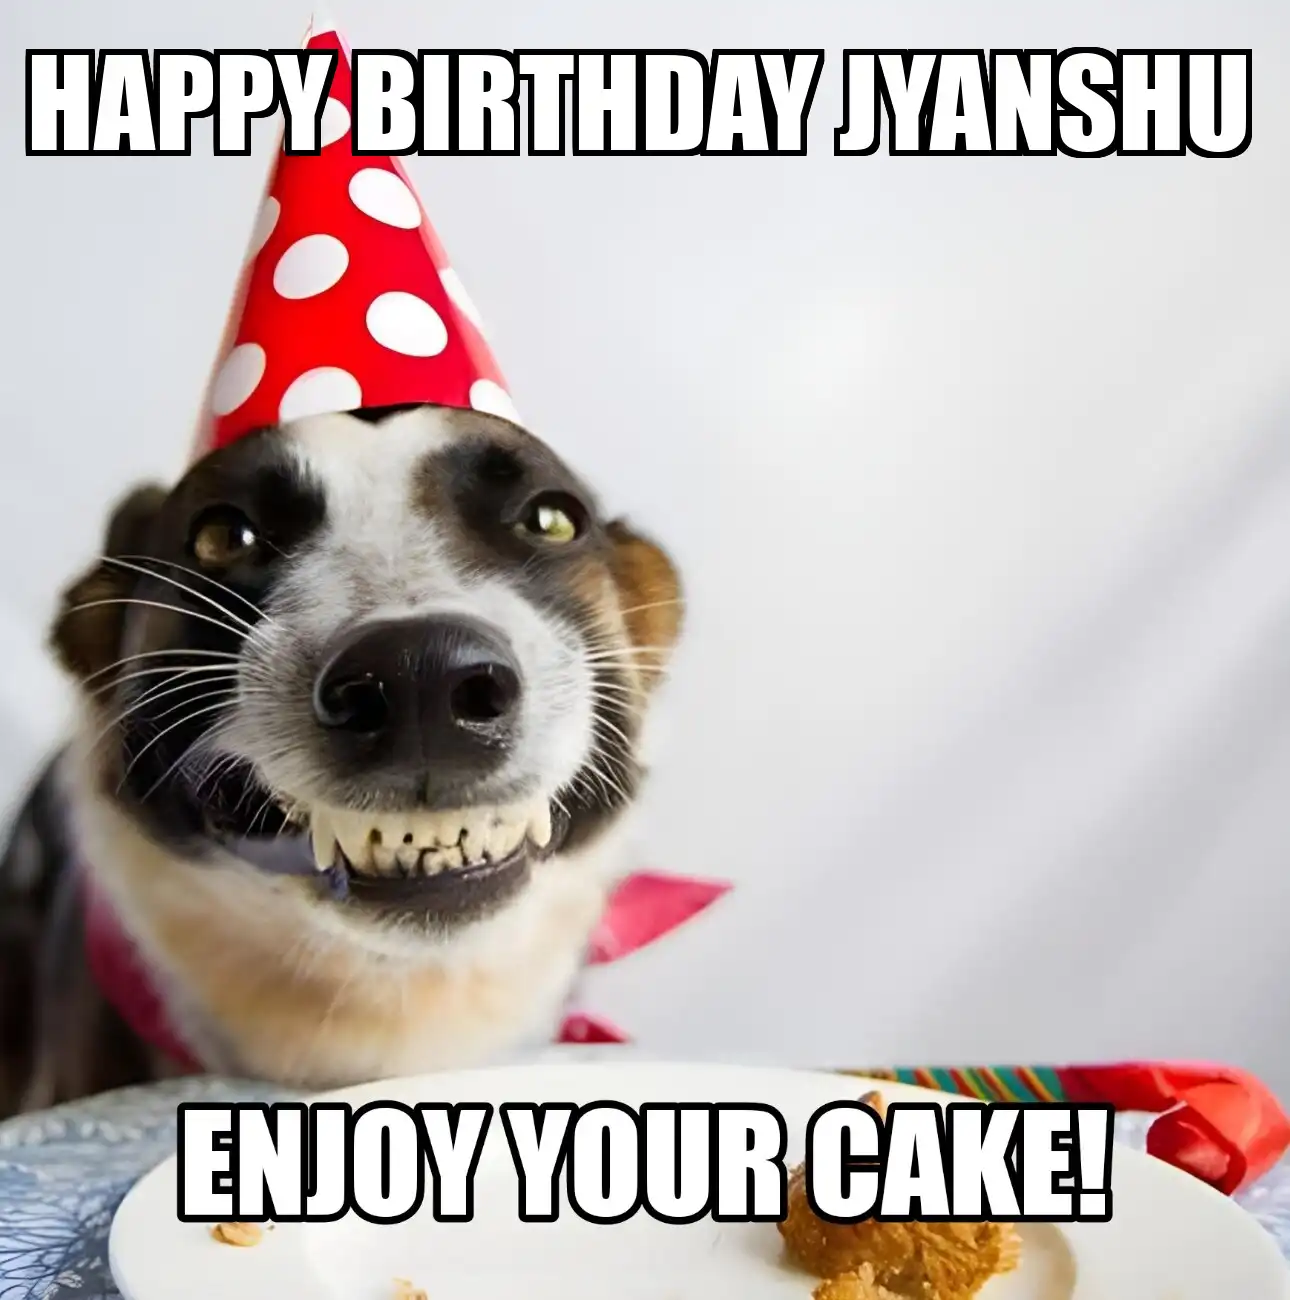 Happy Birthday Jyanshu Enjoy Your Cake Dog Meme